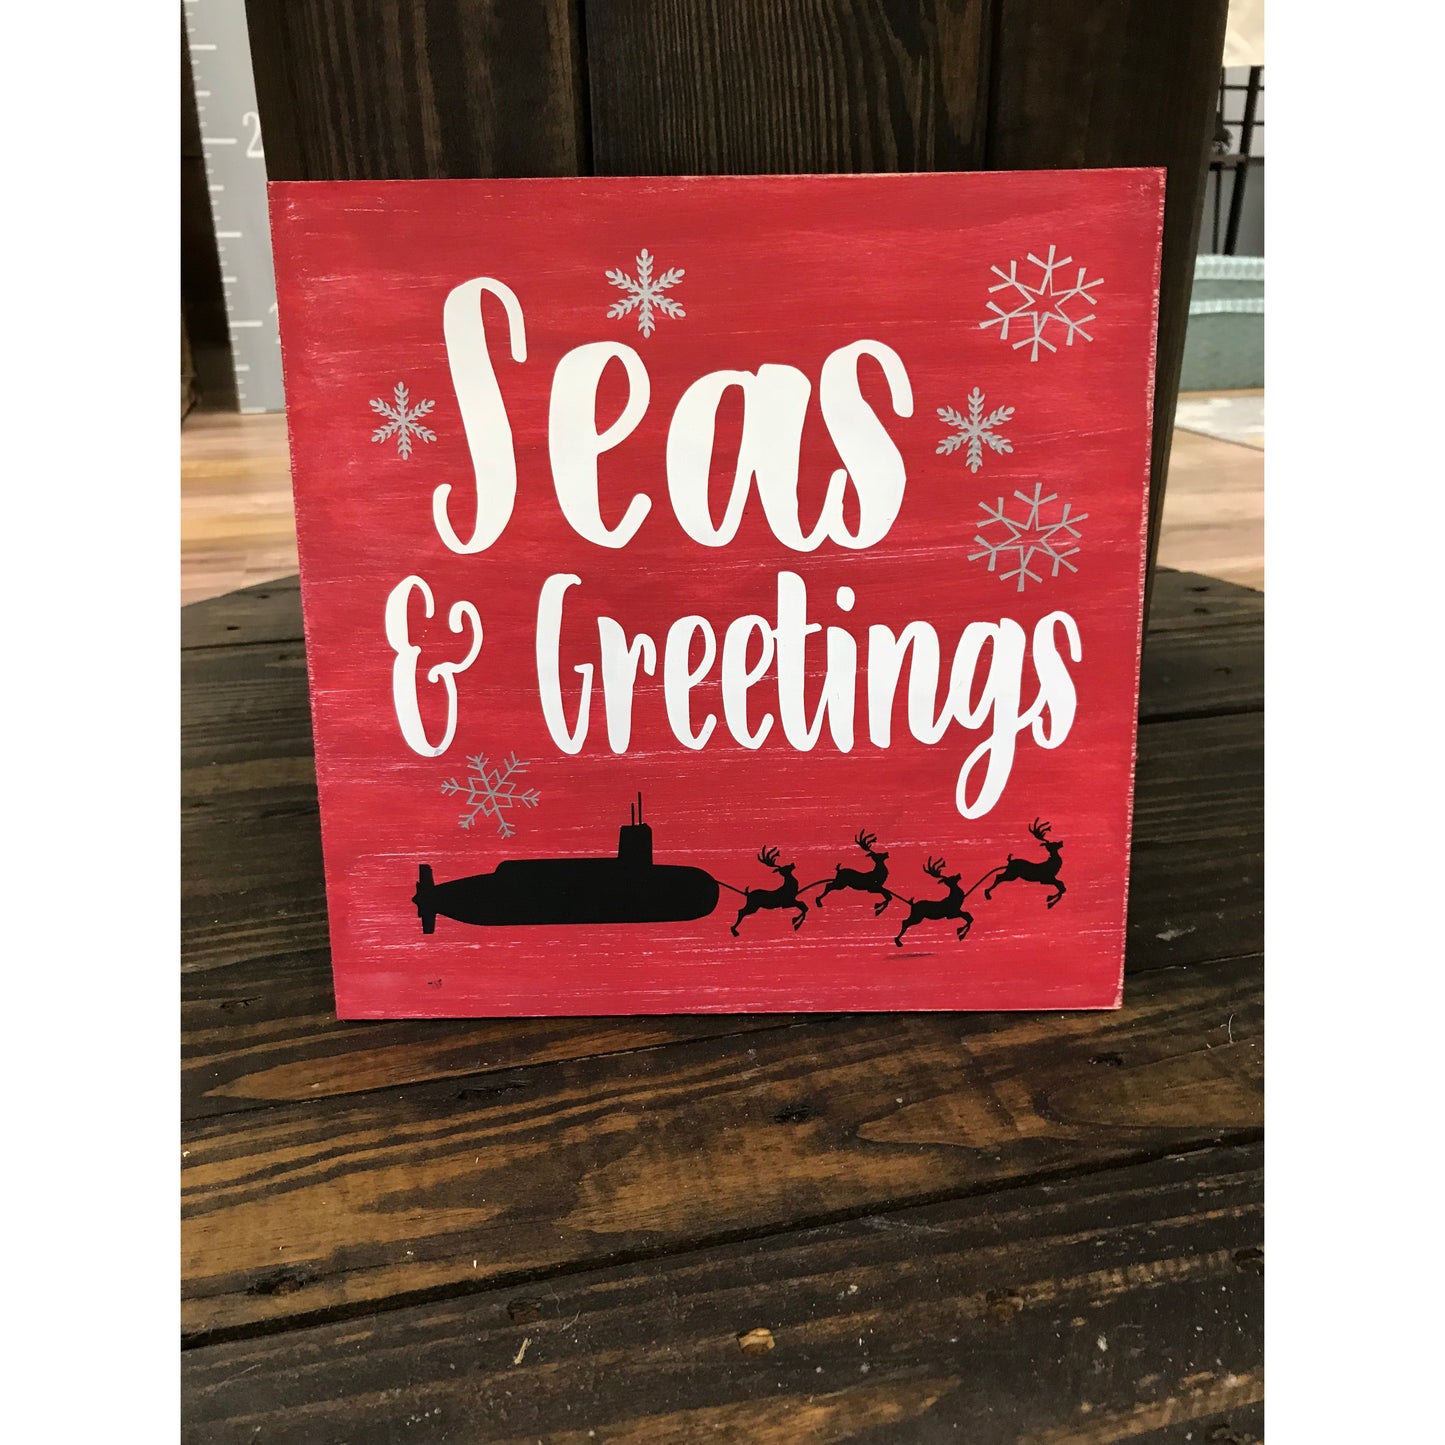 Seas & Greetings